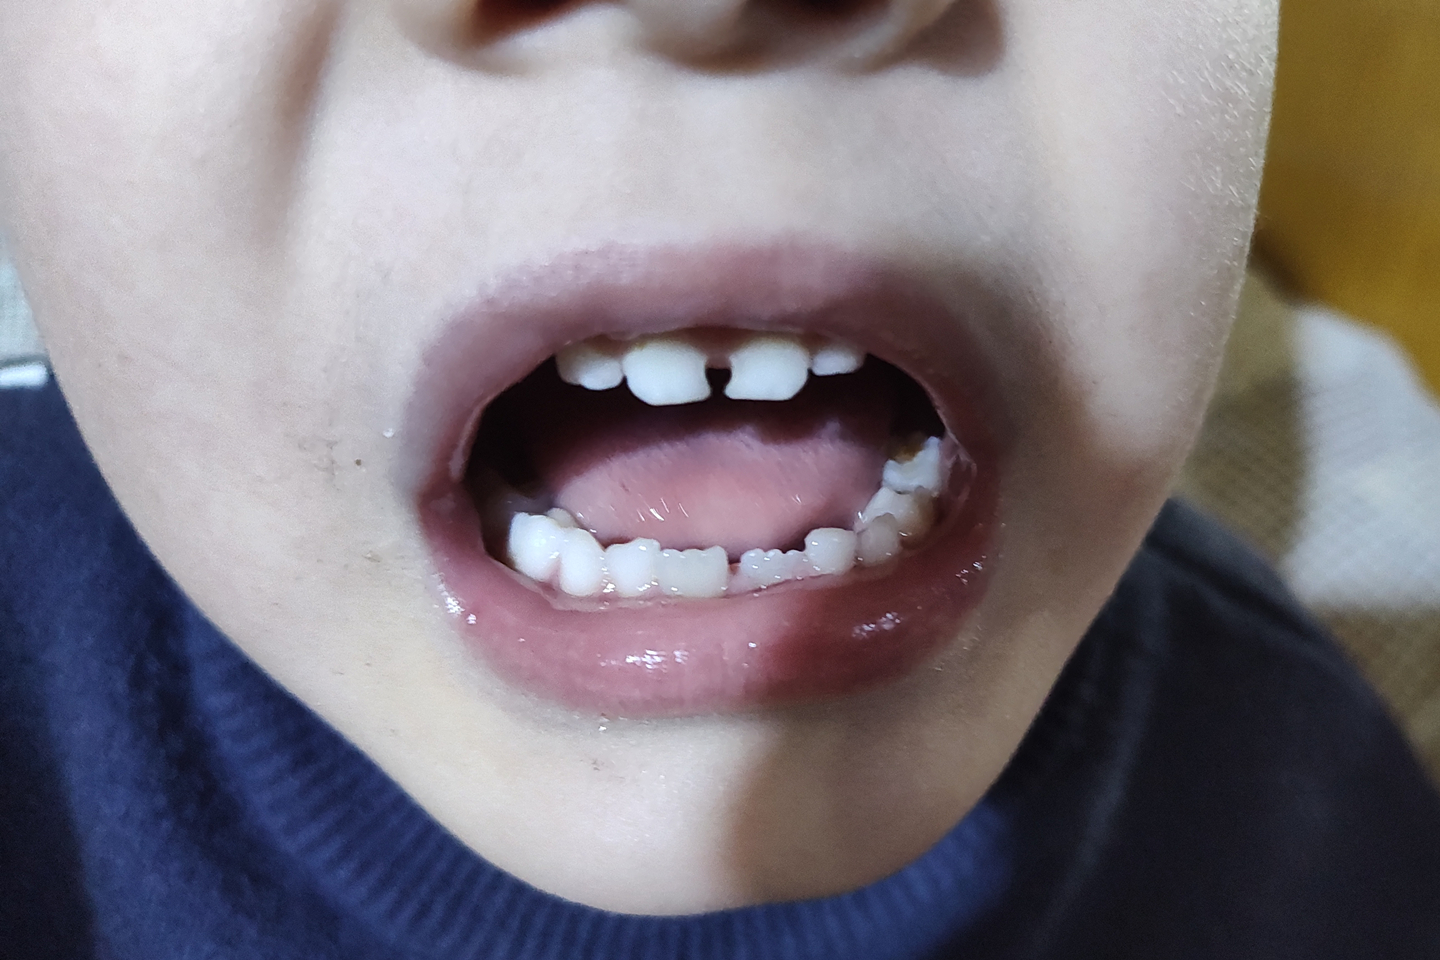 门牙龋齿初期图片